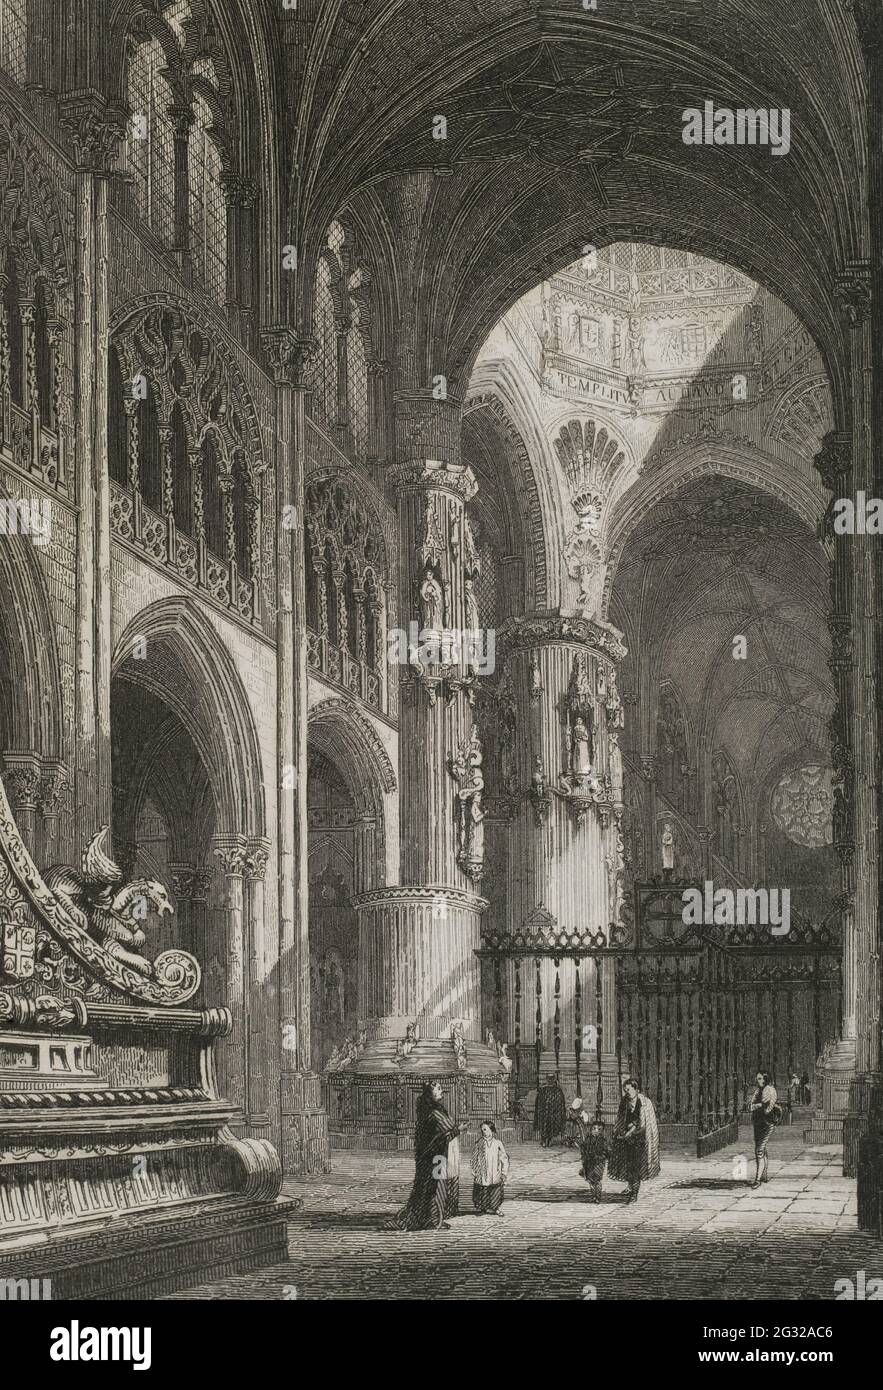 Spain. Burgos Cathedral. Inside view. Engraving by Antonio Roca. Las Glorias Nacionales, 1853. Stock Photo